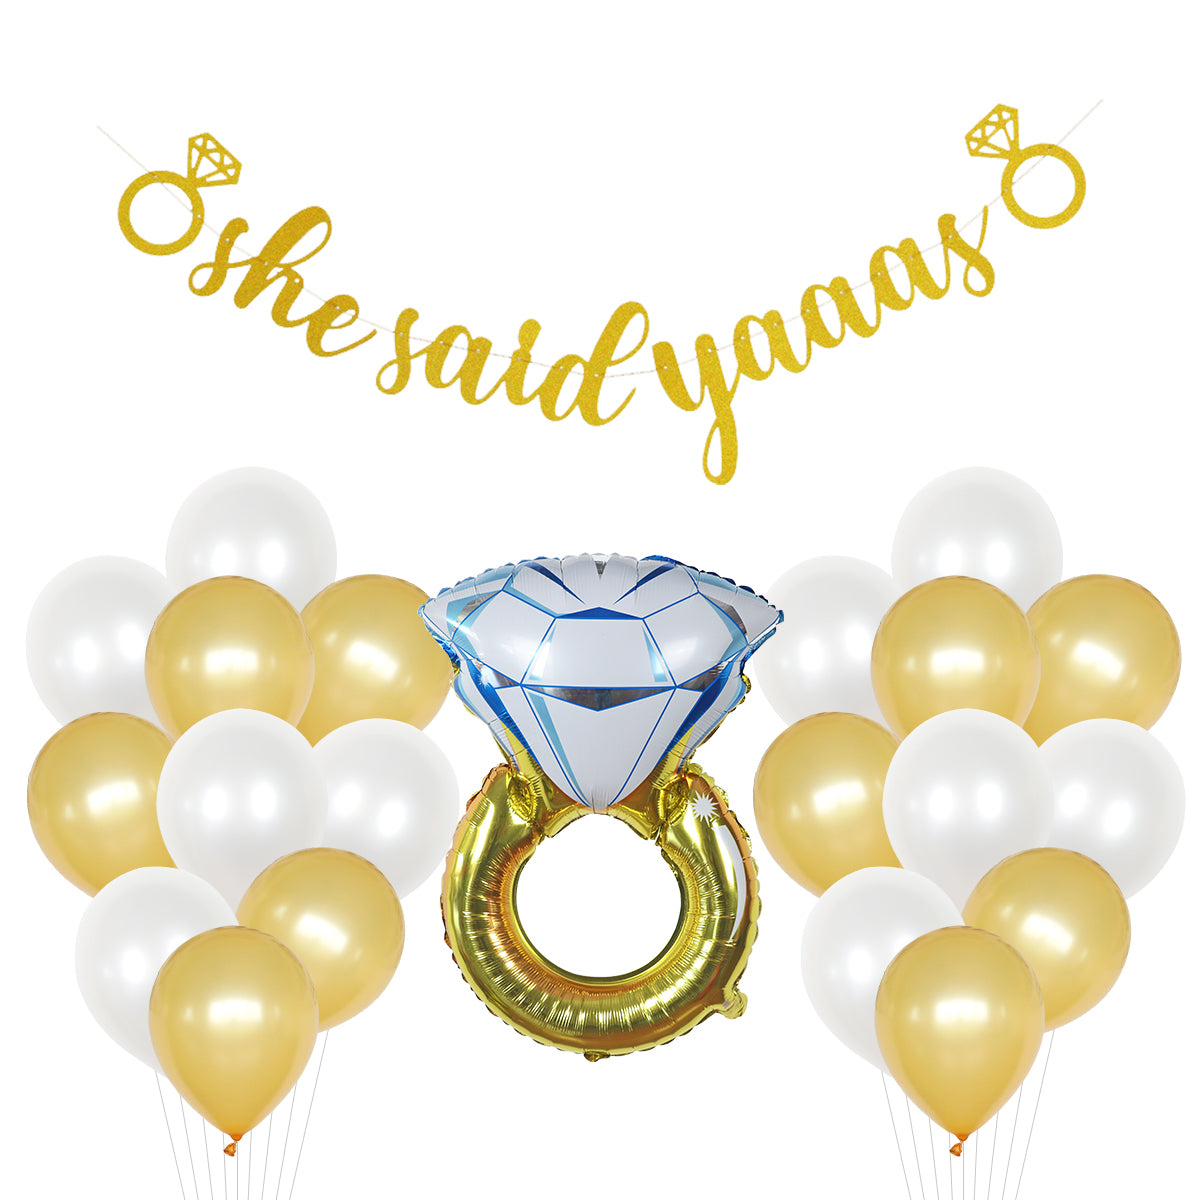 Gold Bridal Shower Decoration Kit - 21 Pieces! –